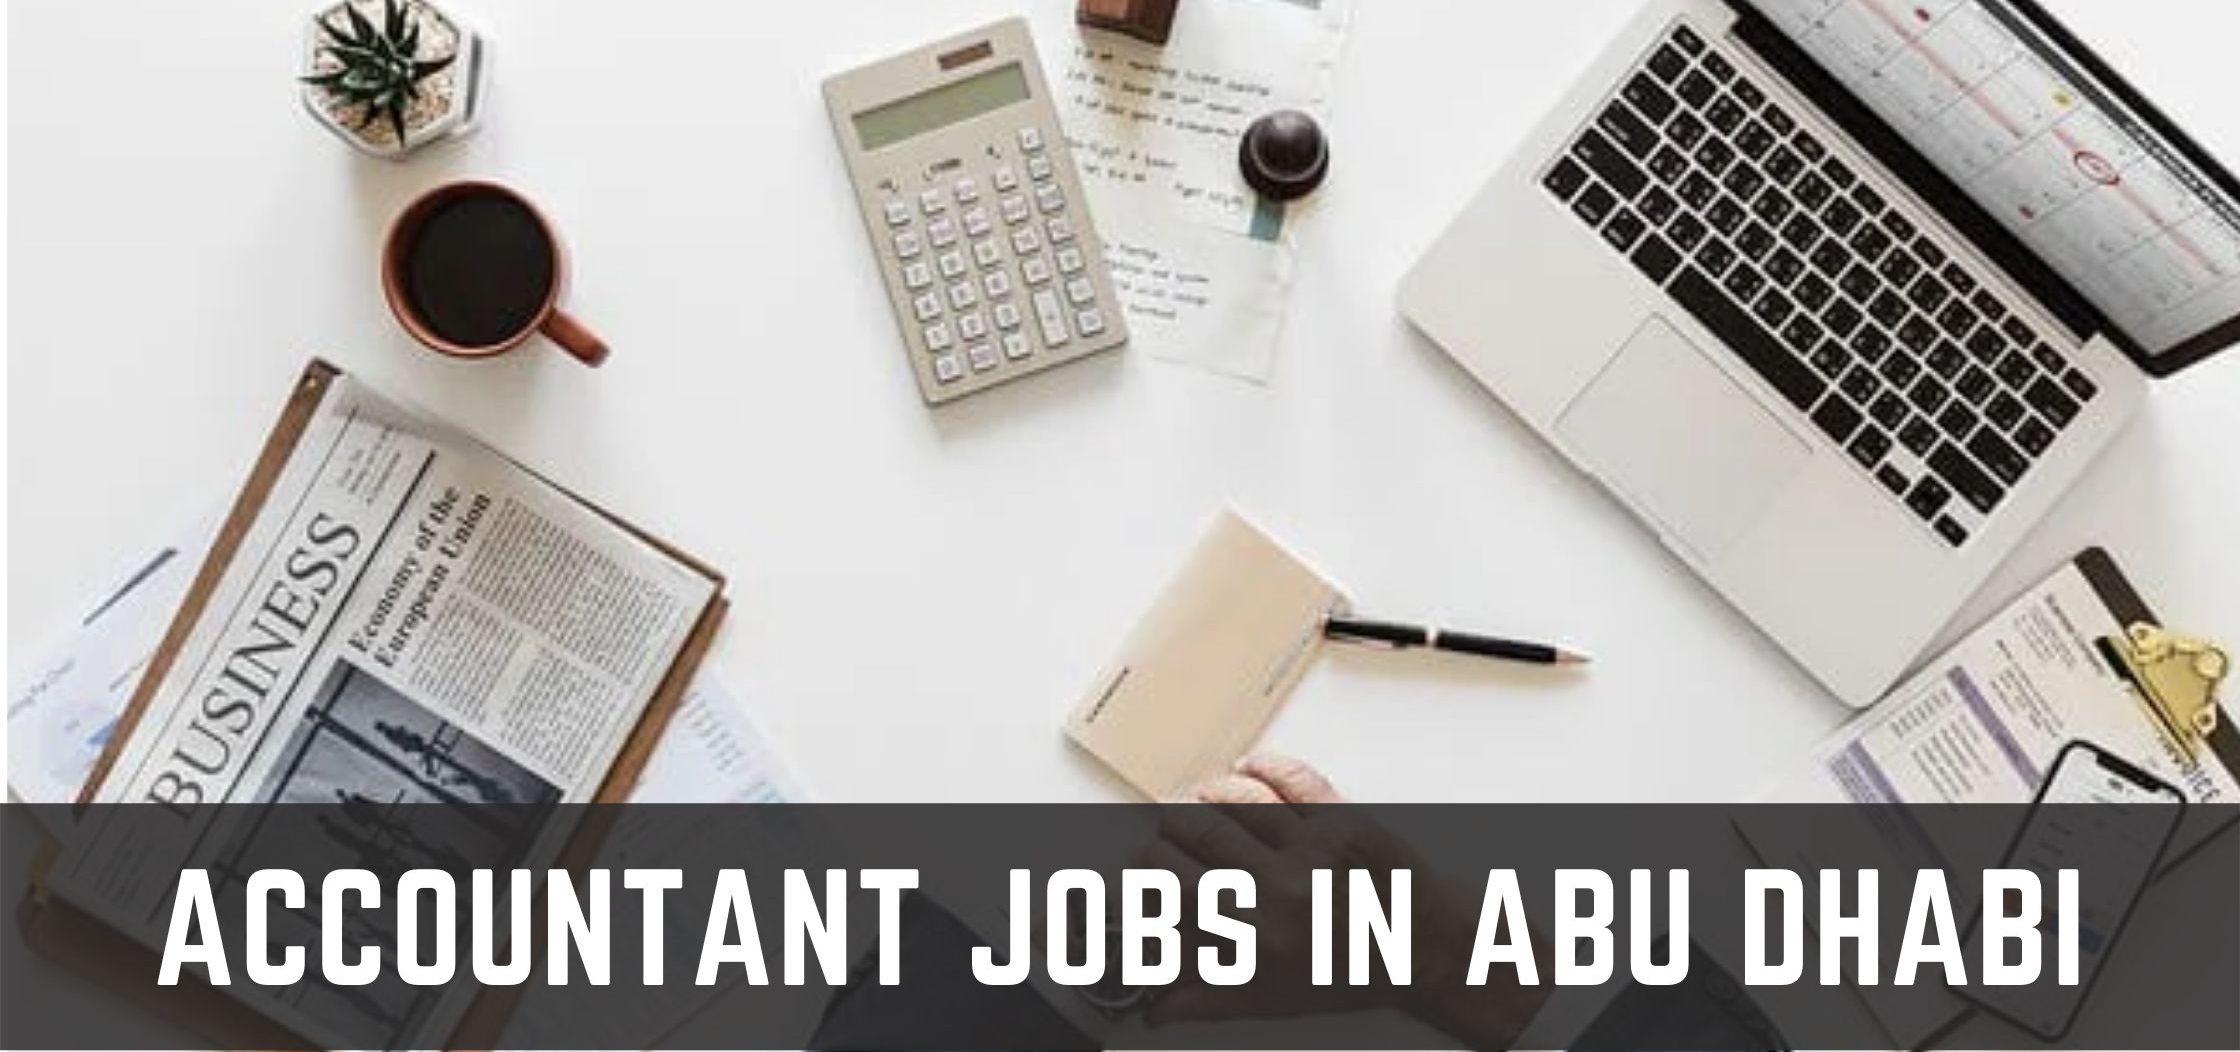 Accountant Jobs in Abu Dhabi e1659708667910